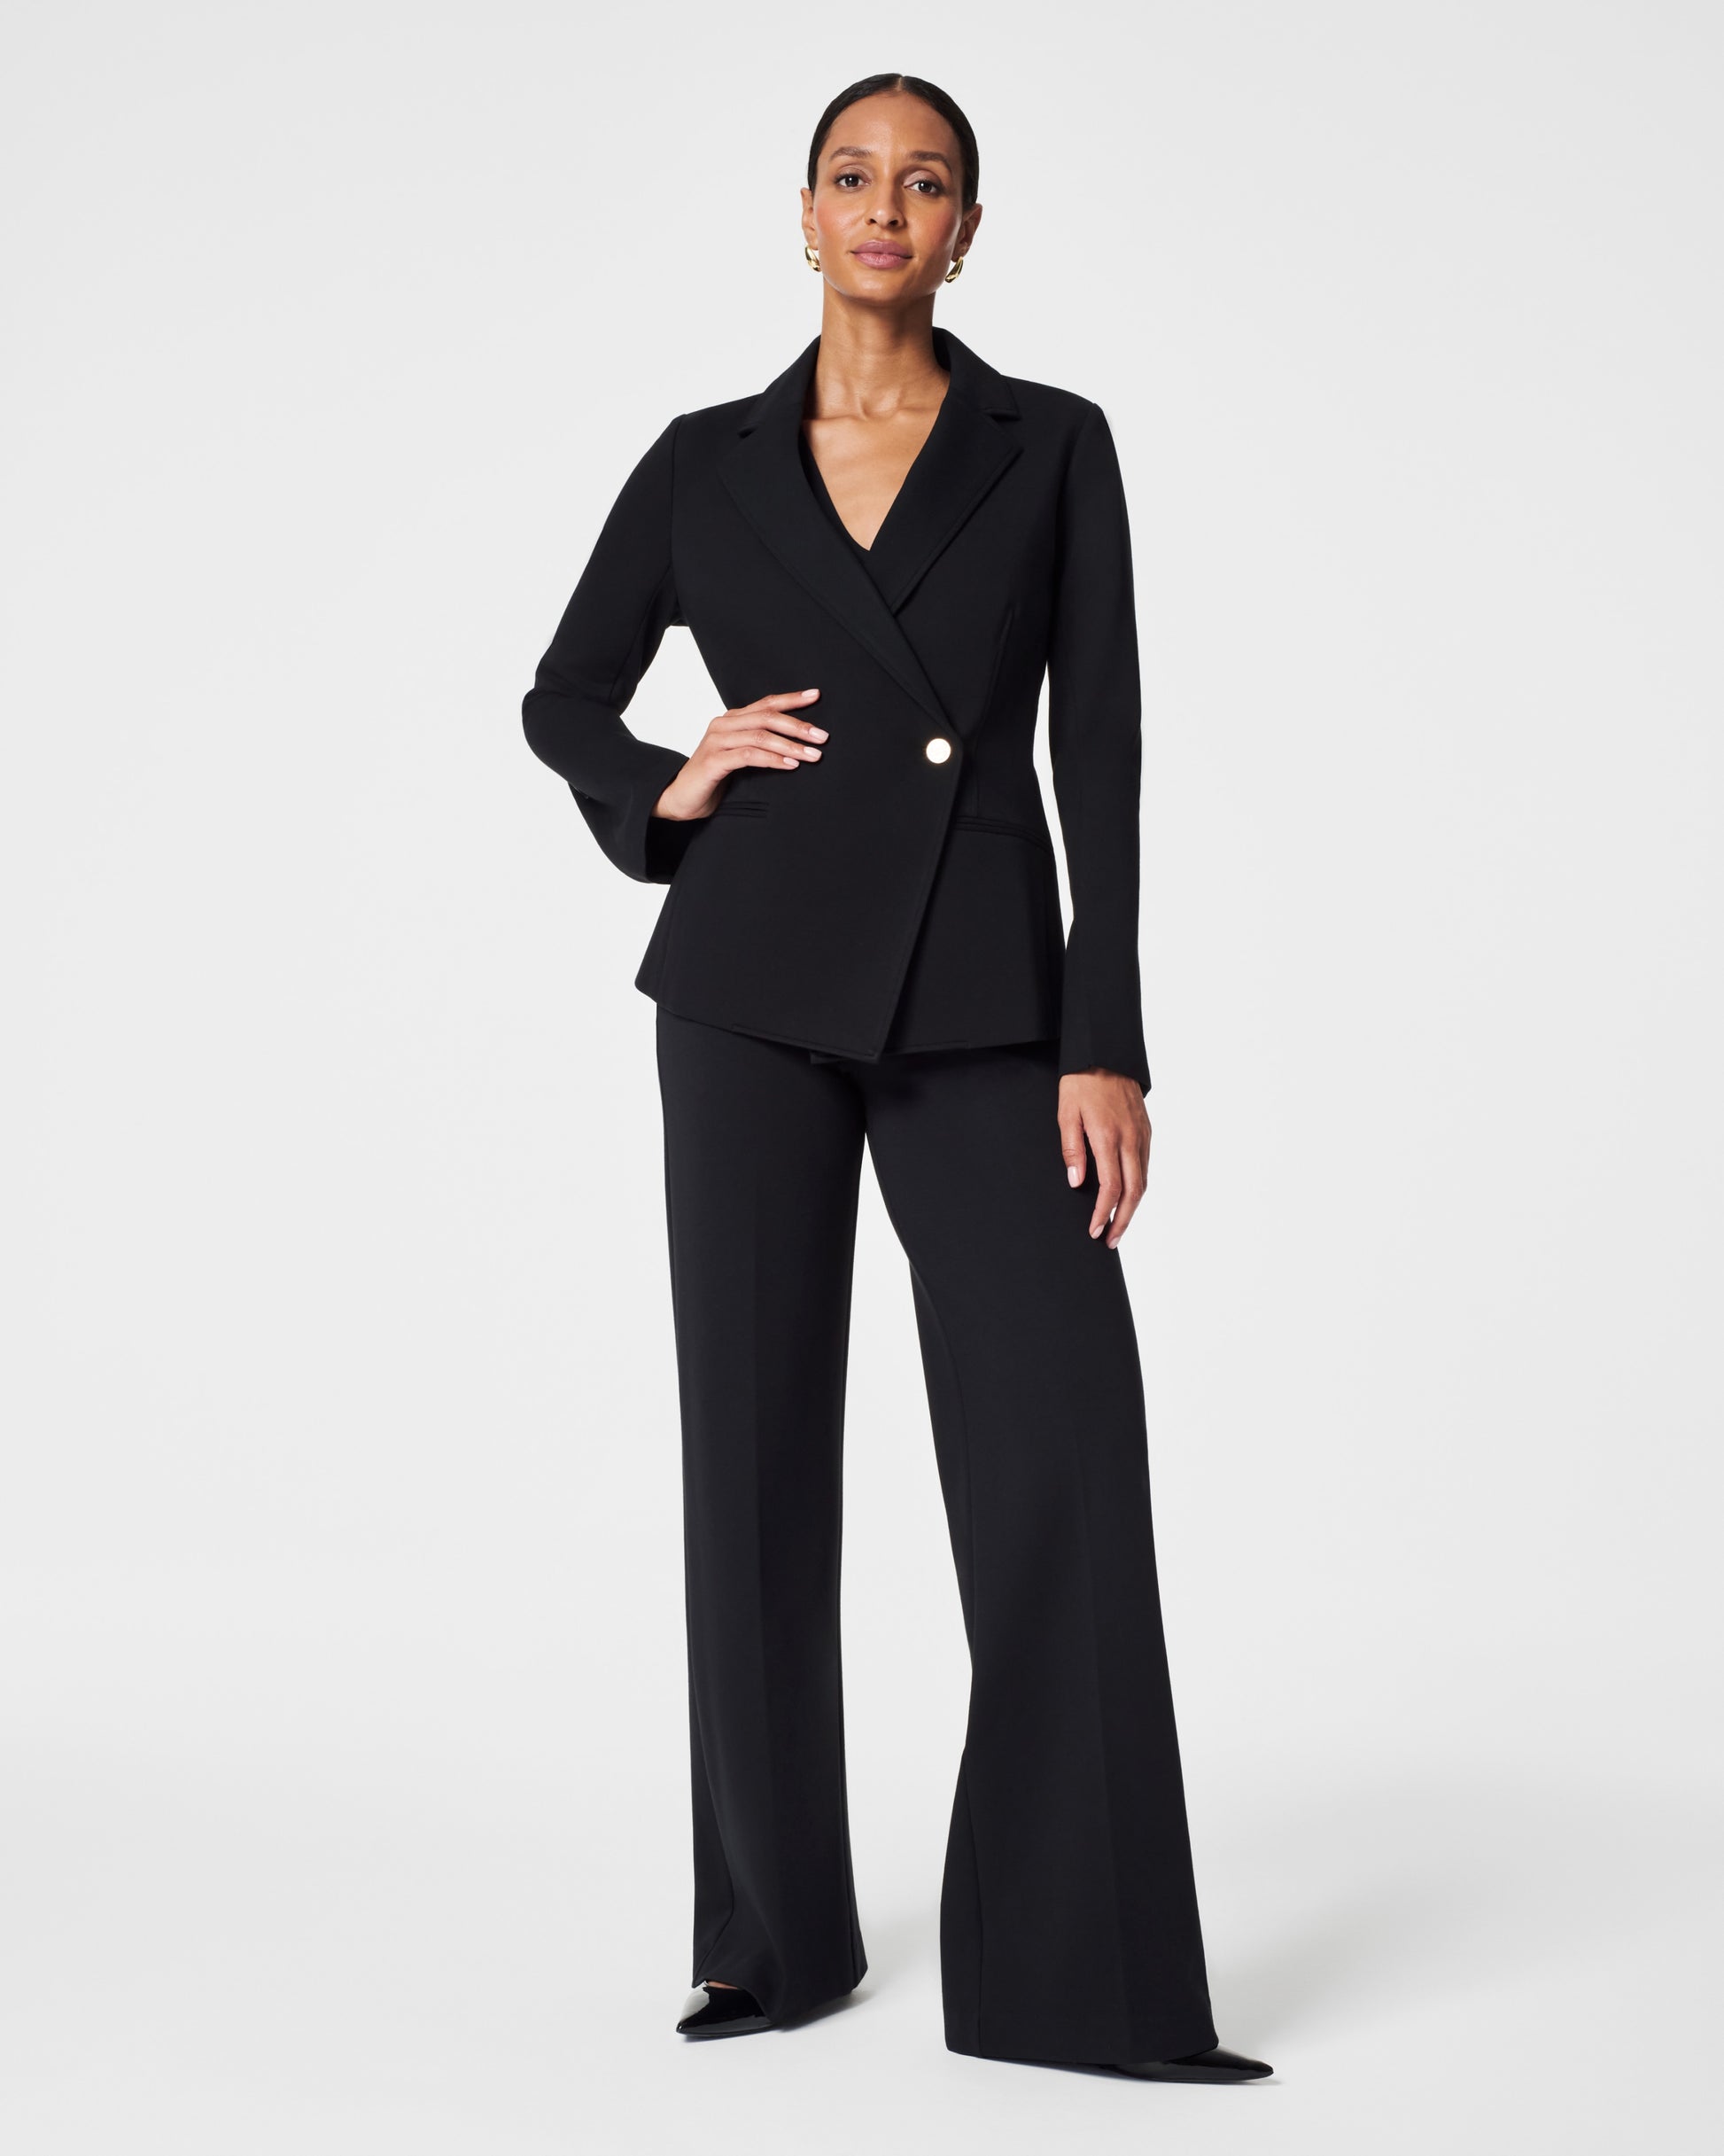 Black Women's Pants Suit Set With Blazer, Black Classic Women's Suit Set,  Black Blazer Trouser Suit for Women 